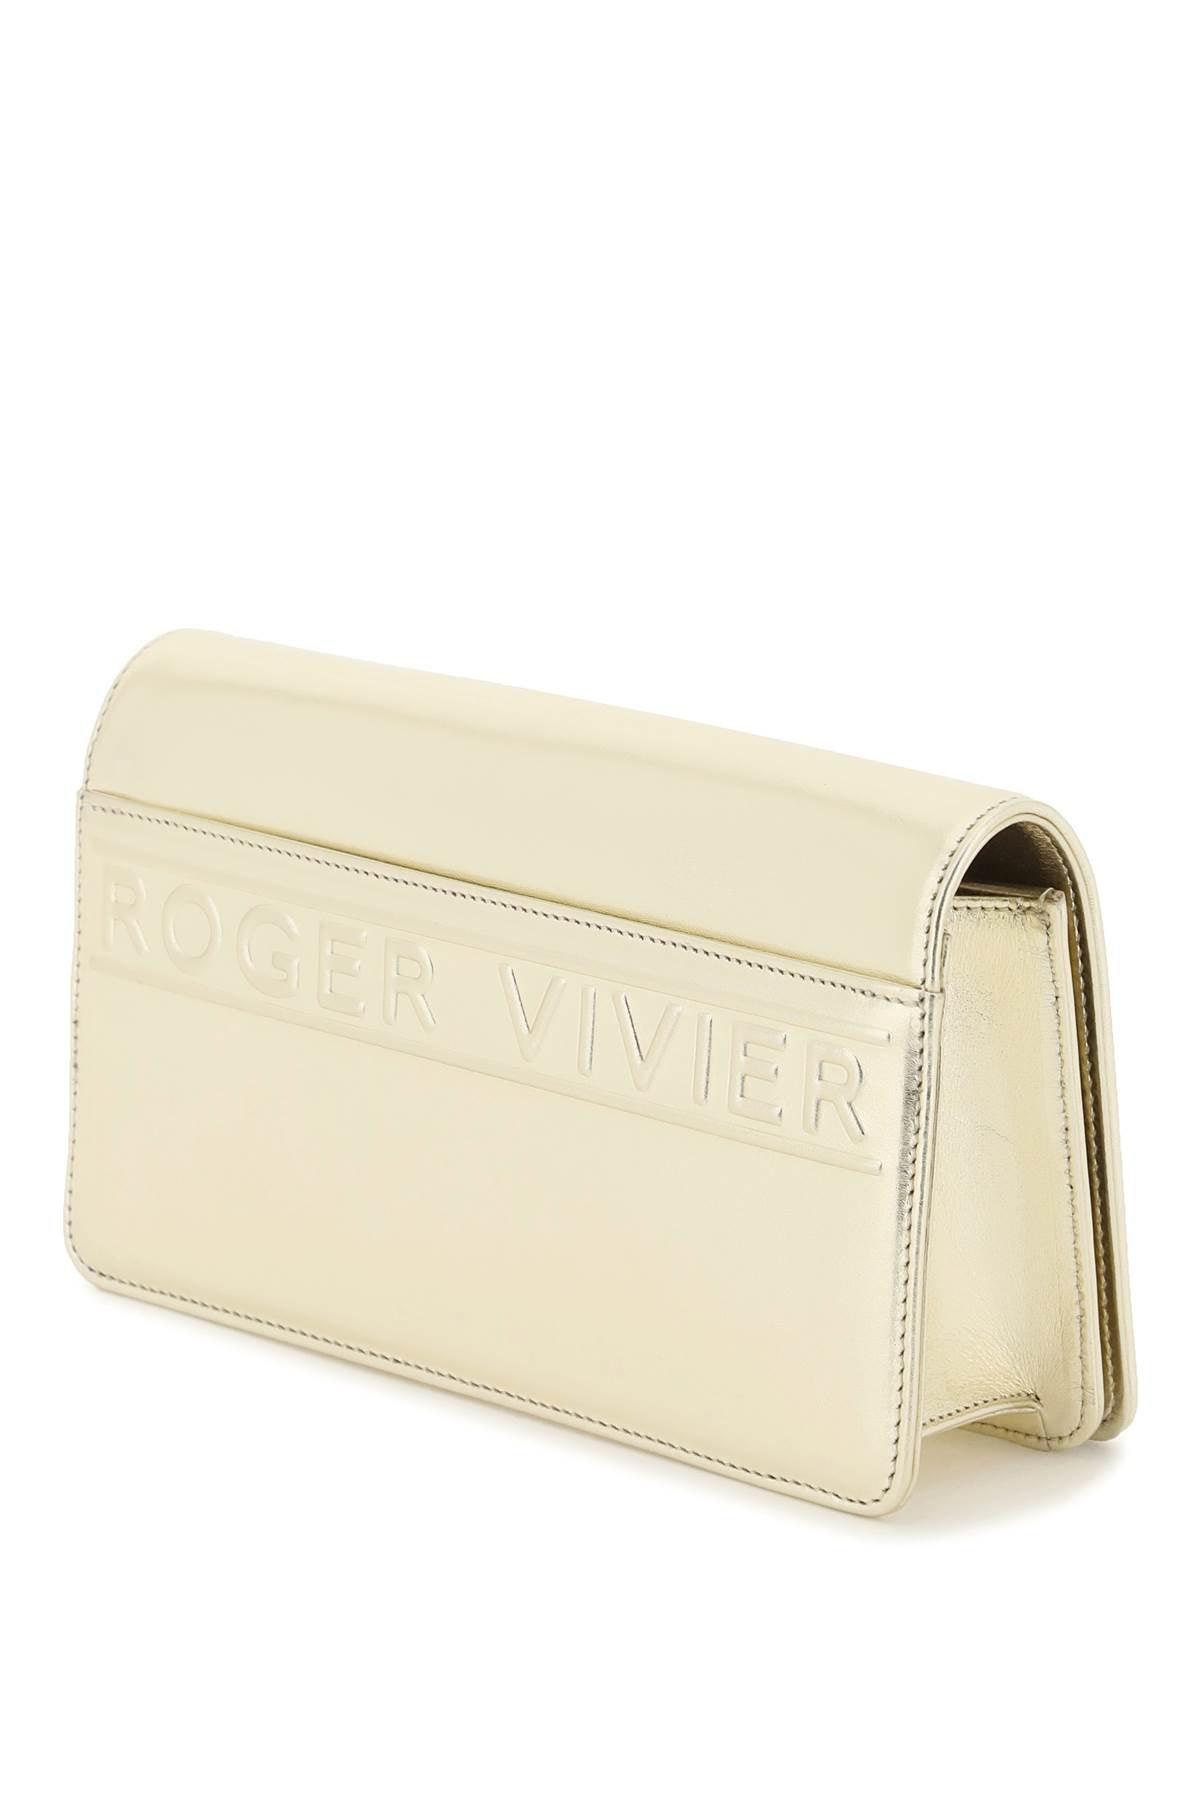 Roger Vivier Mini Viv' Choc Jewel Laminated Leather Bag - JOHN JULIA